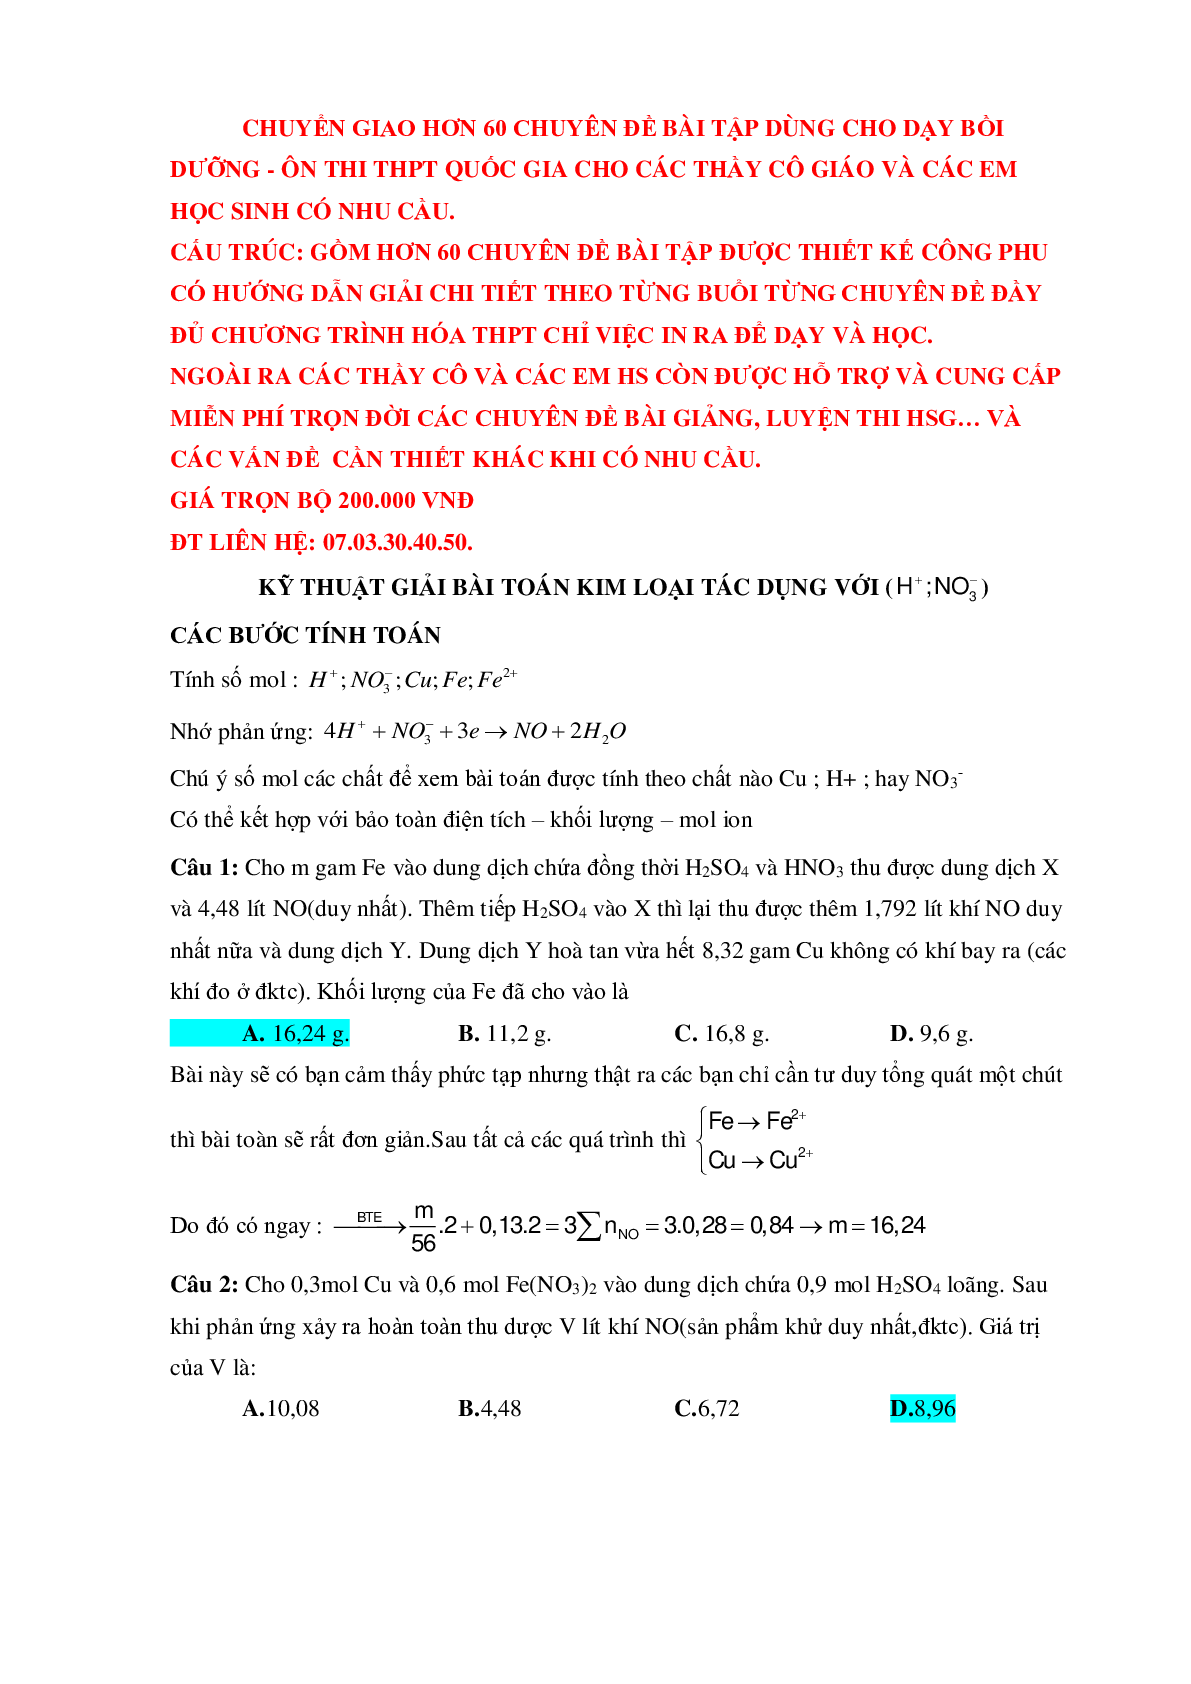 Bài tập về HNO3 vận dụng cao với phương pháp bảo toàn electron có đáp án (trang 1)